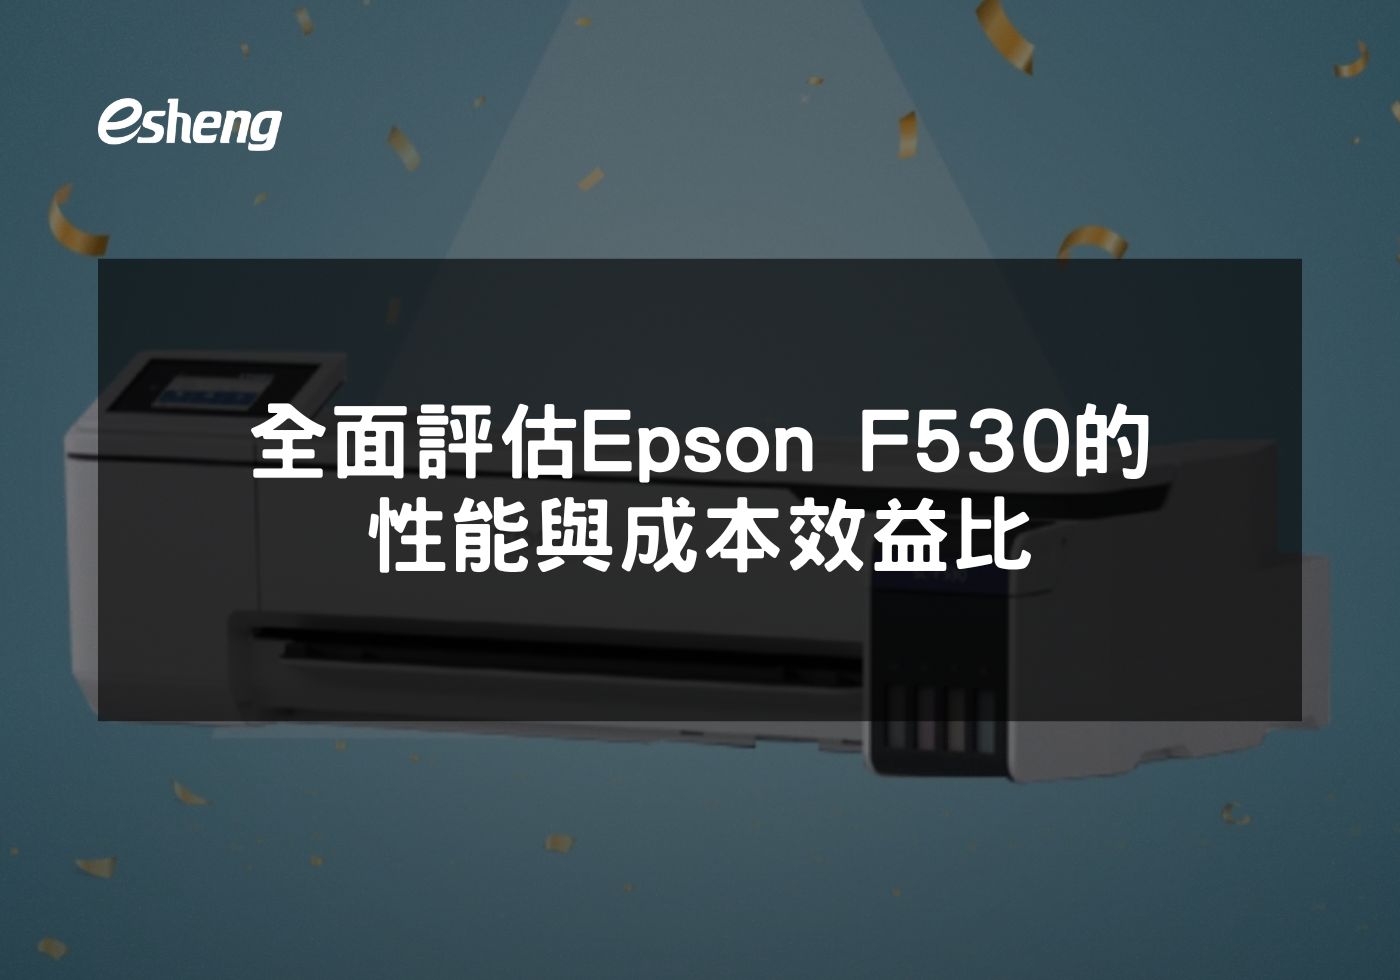 EPSON F530高效能熱昇華印表機全面評測